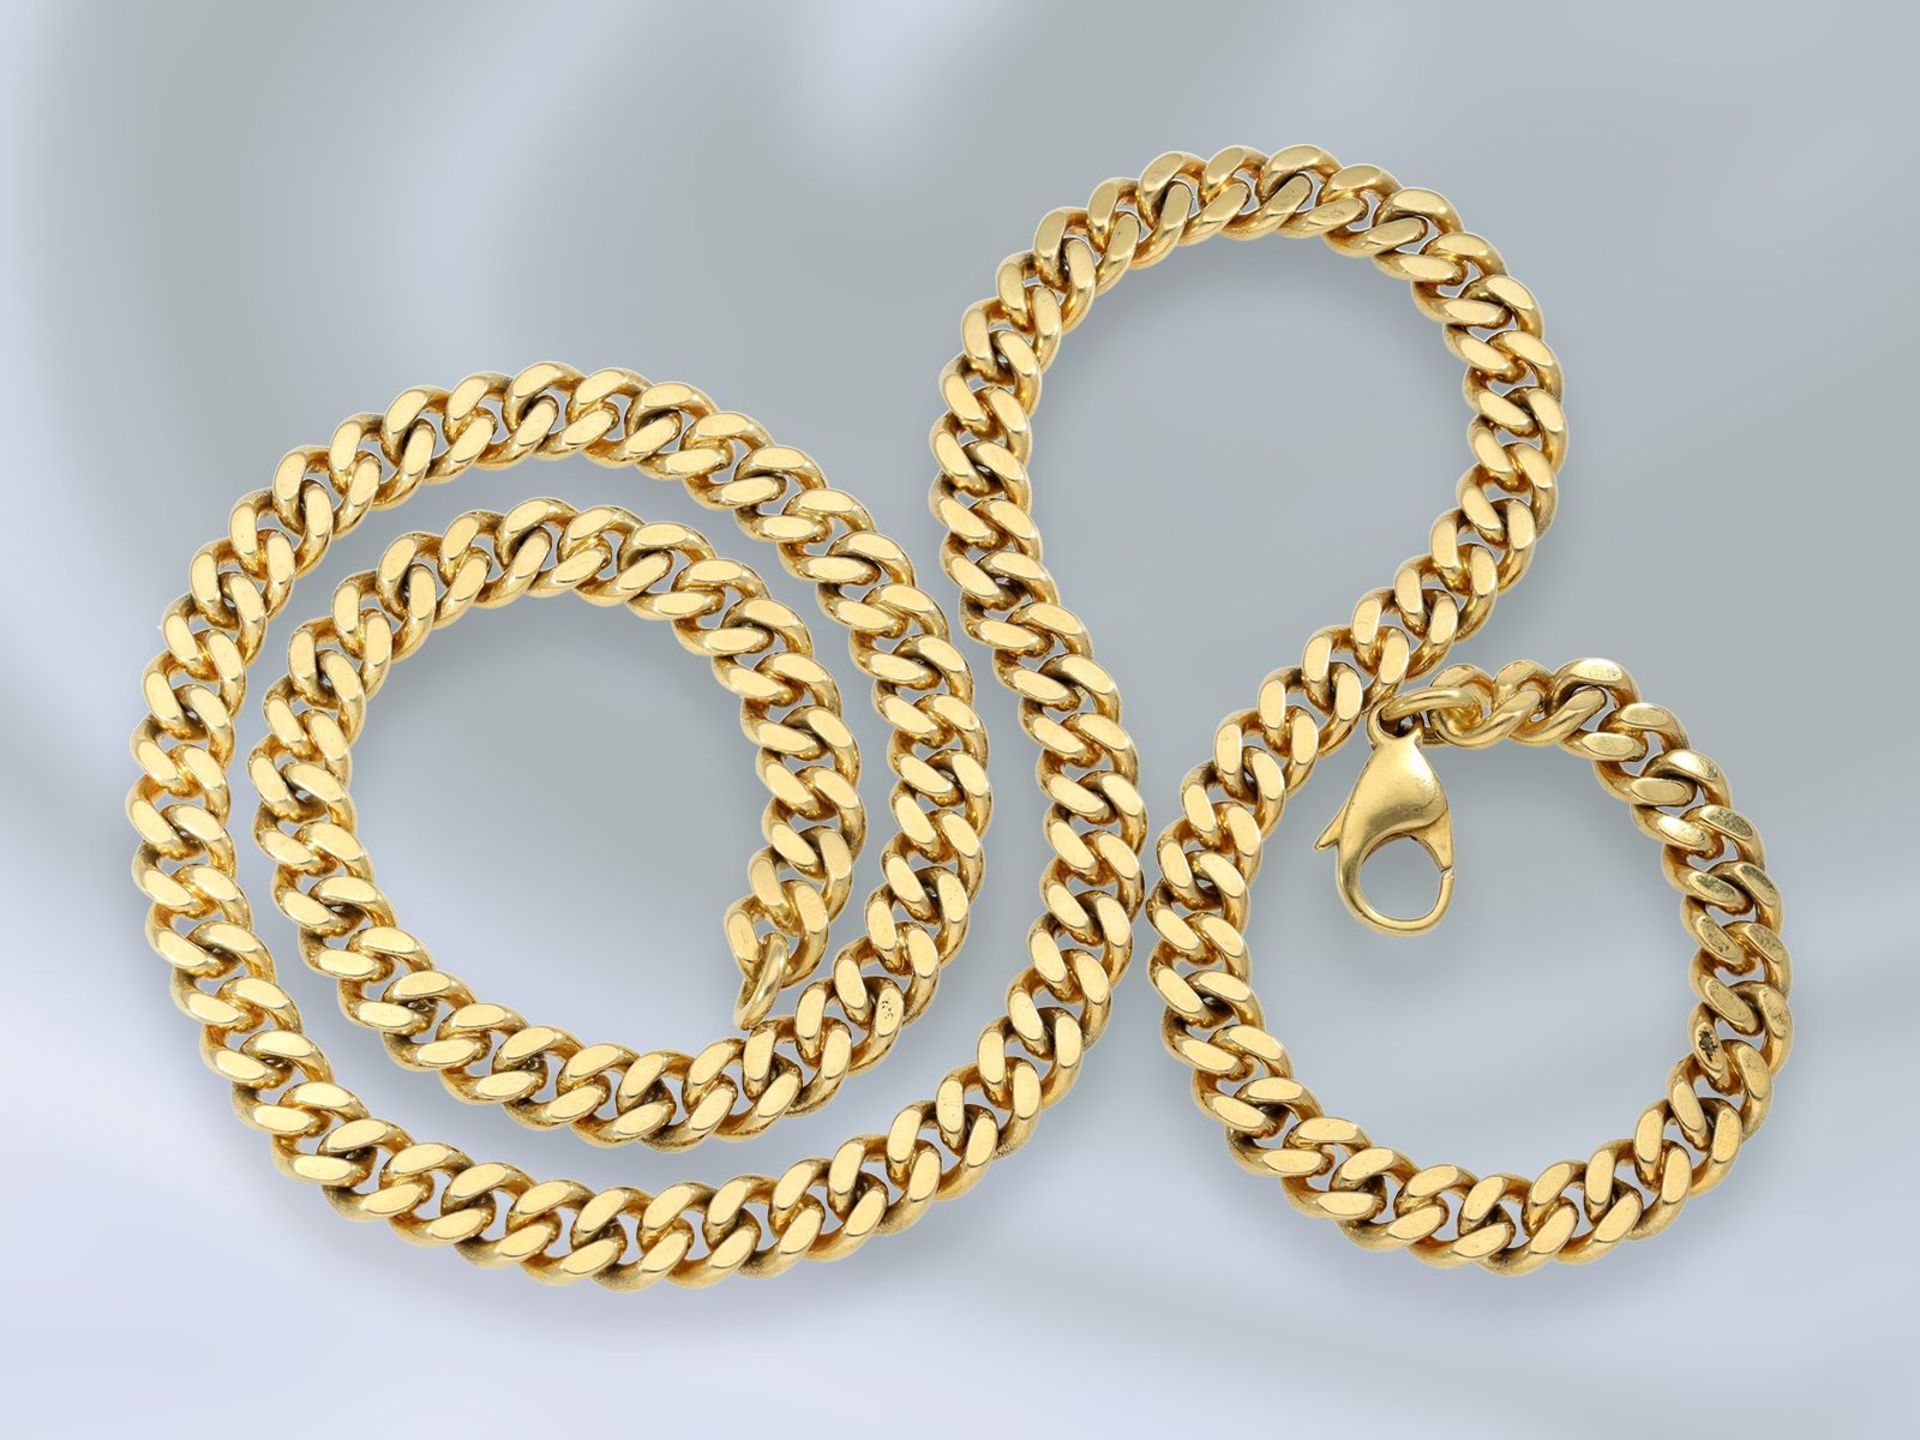 Kette/Collier: sehr schwere und lange Goldkette im Flachpanzer-Muster, äußerst massive Qualität,